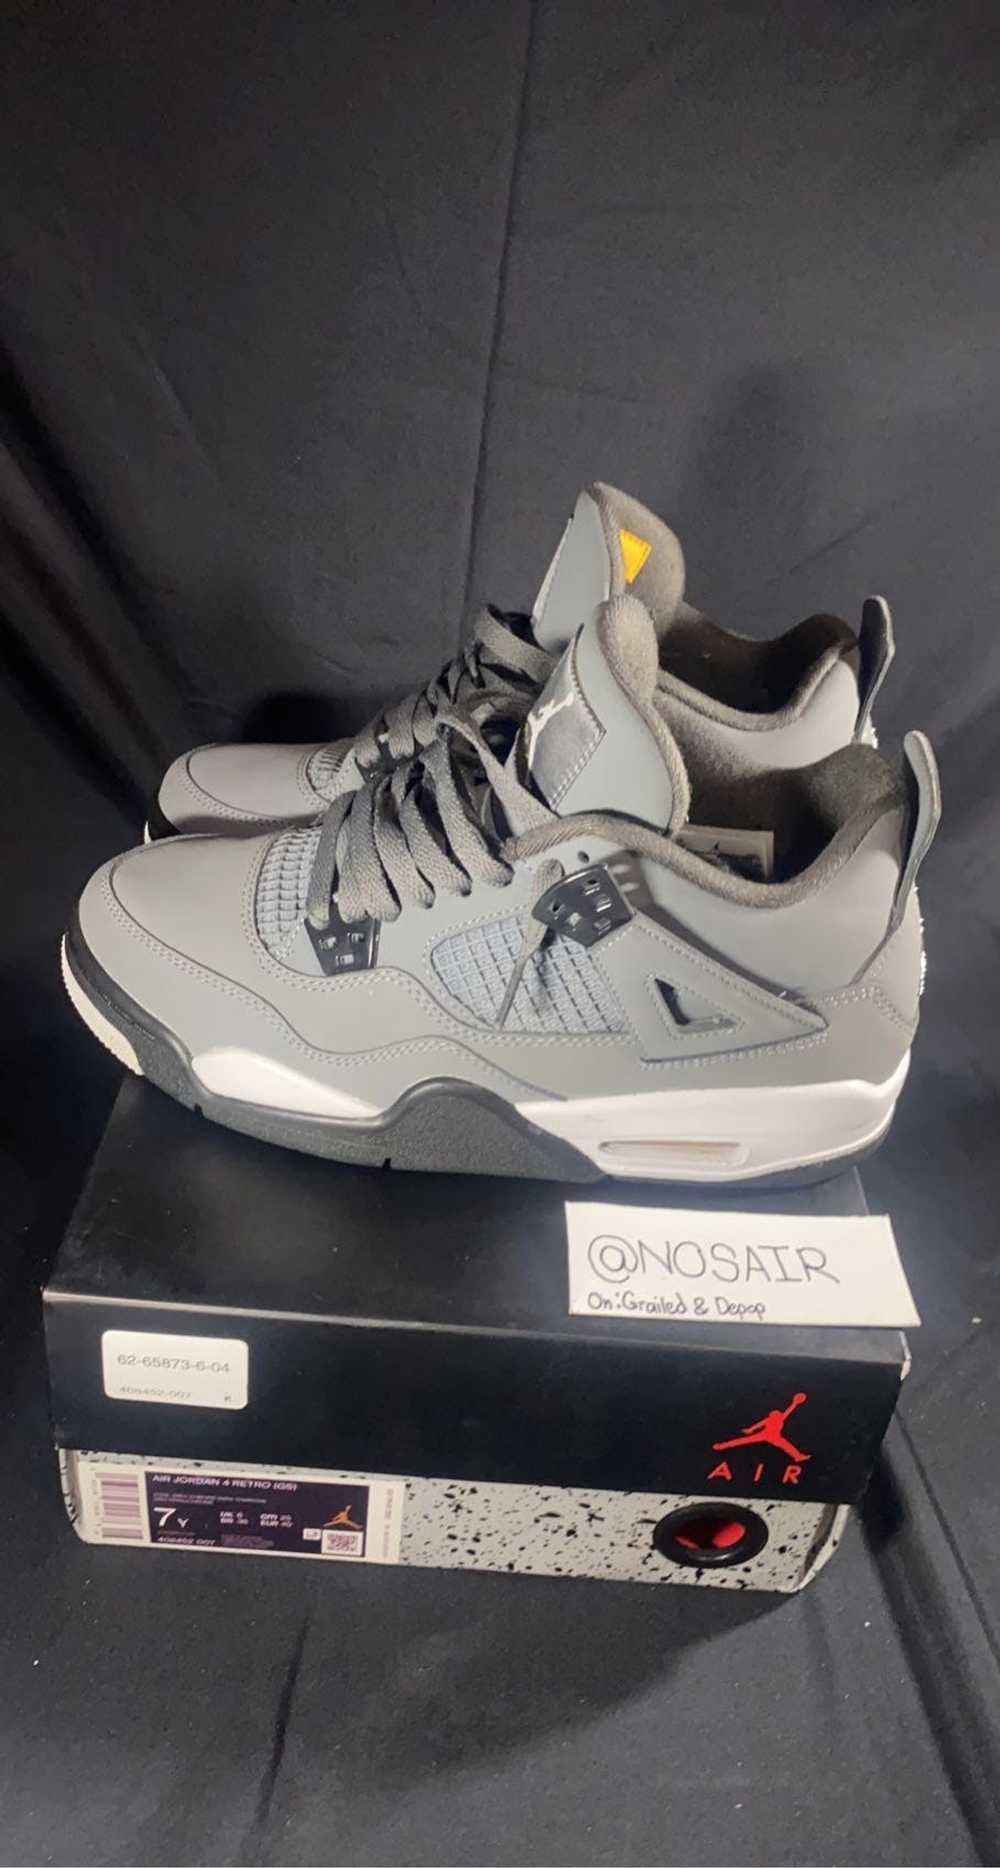 Jordan Brand × Nike 2019 Jordan 4 Cool Grey - image 2